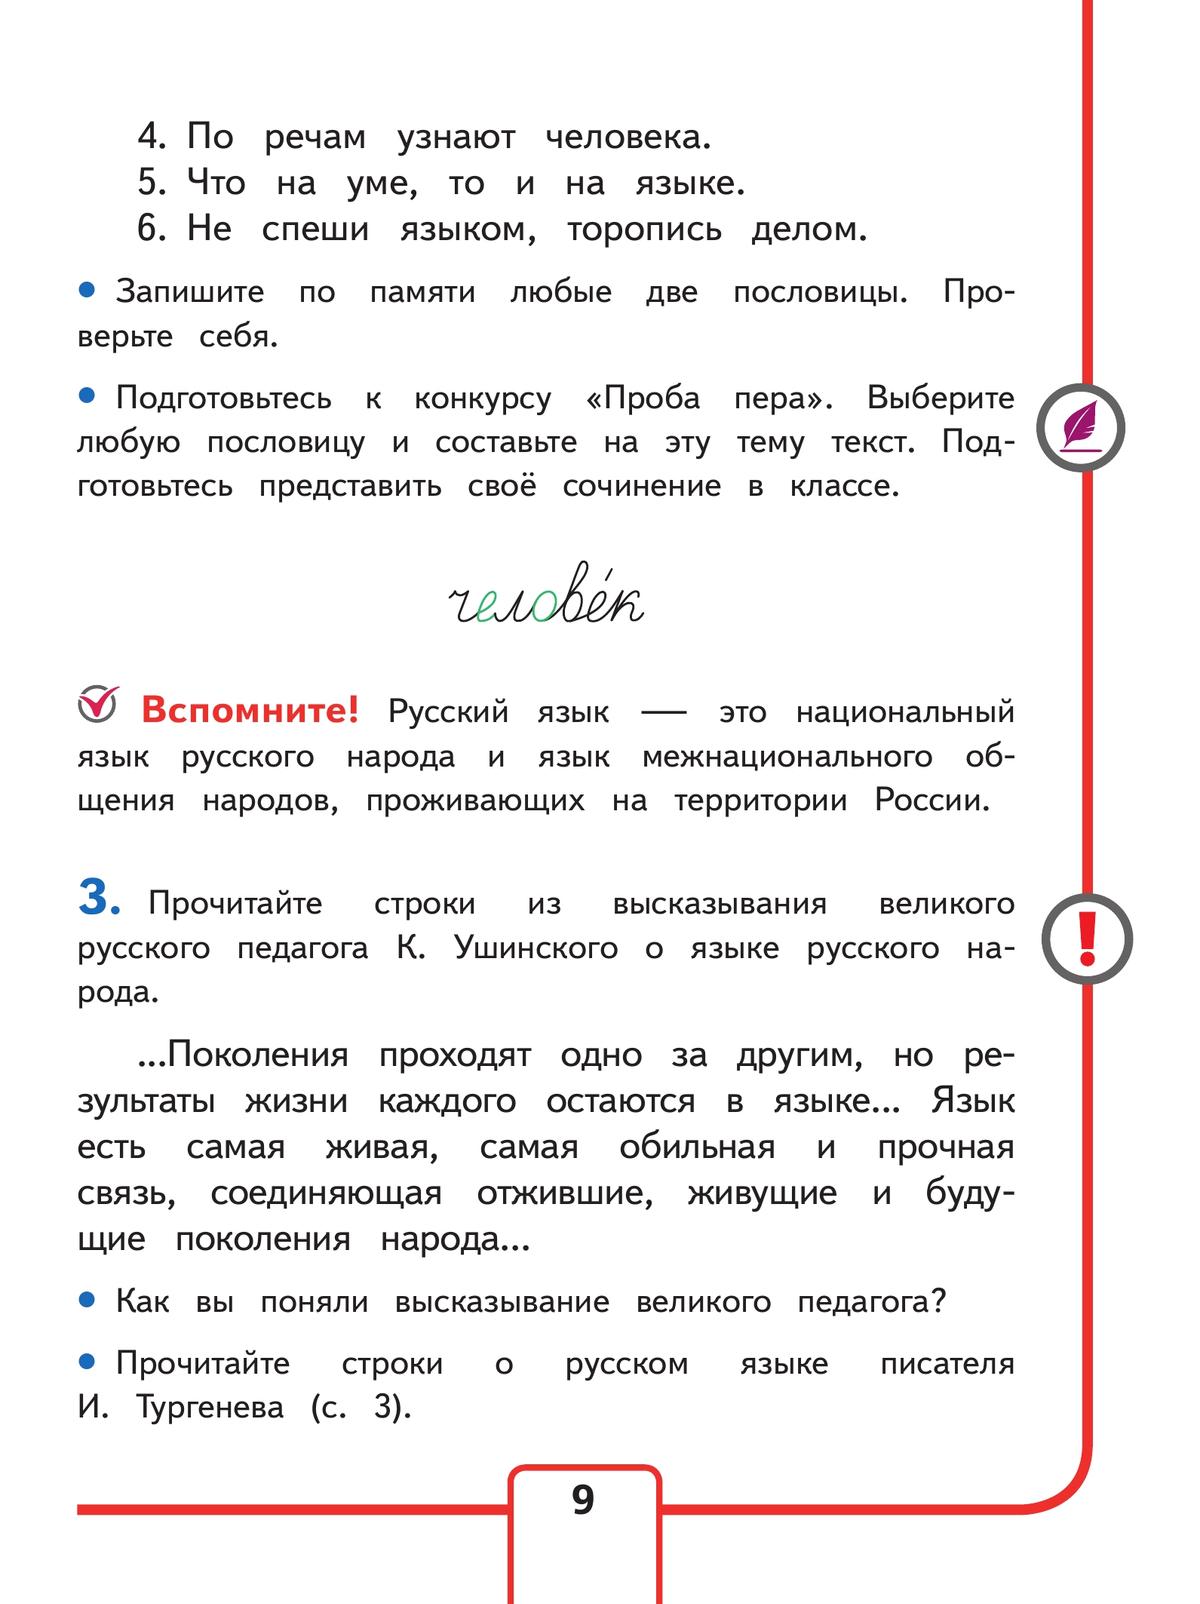 Русский язык. 4 класс. Учебное пособие. В 5 ч. Часть 1 (для слабовидящих обучающихся) 5